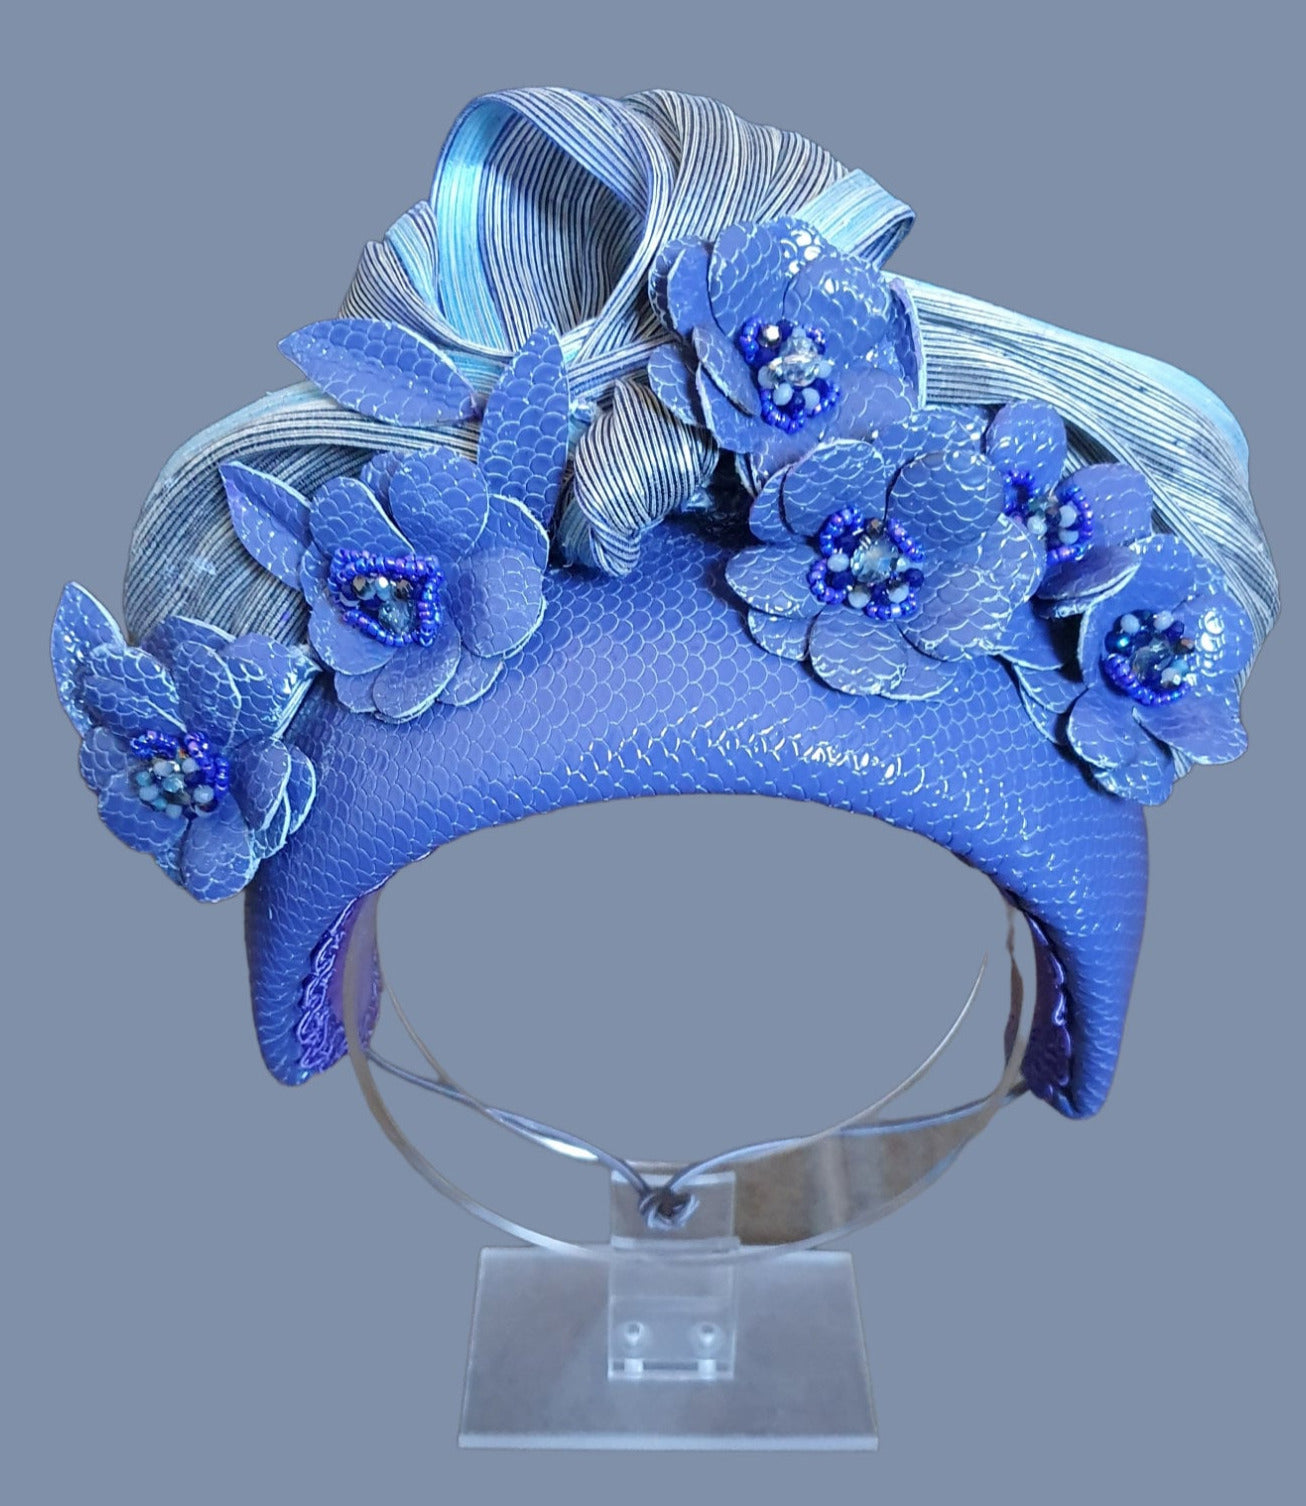 Handgemaakte paarse en blauwe hoofdband van natuurlijk leer met bloemen en zijden abaca- mooie hoofdband, feestelijke unieke diadeem